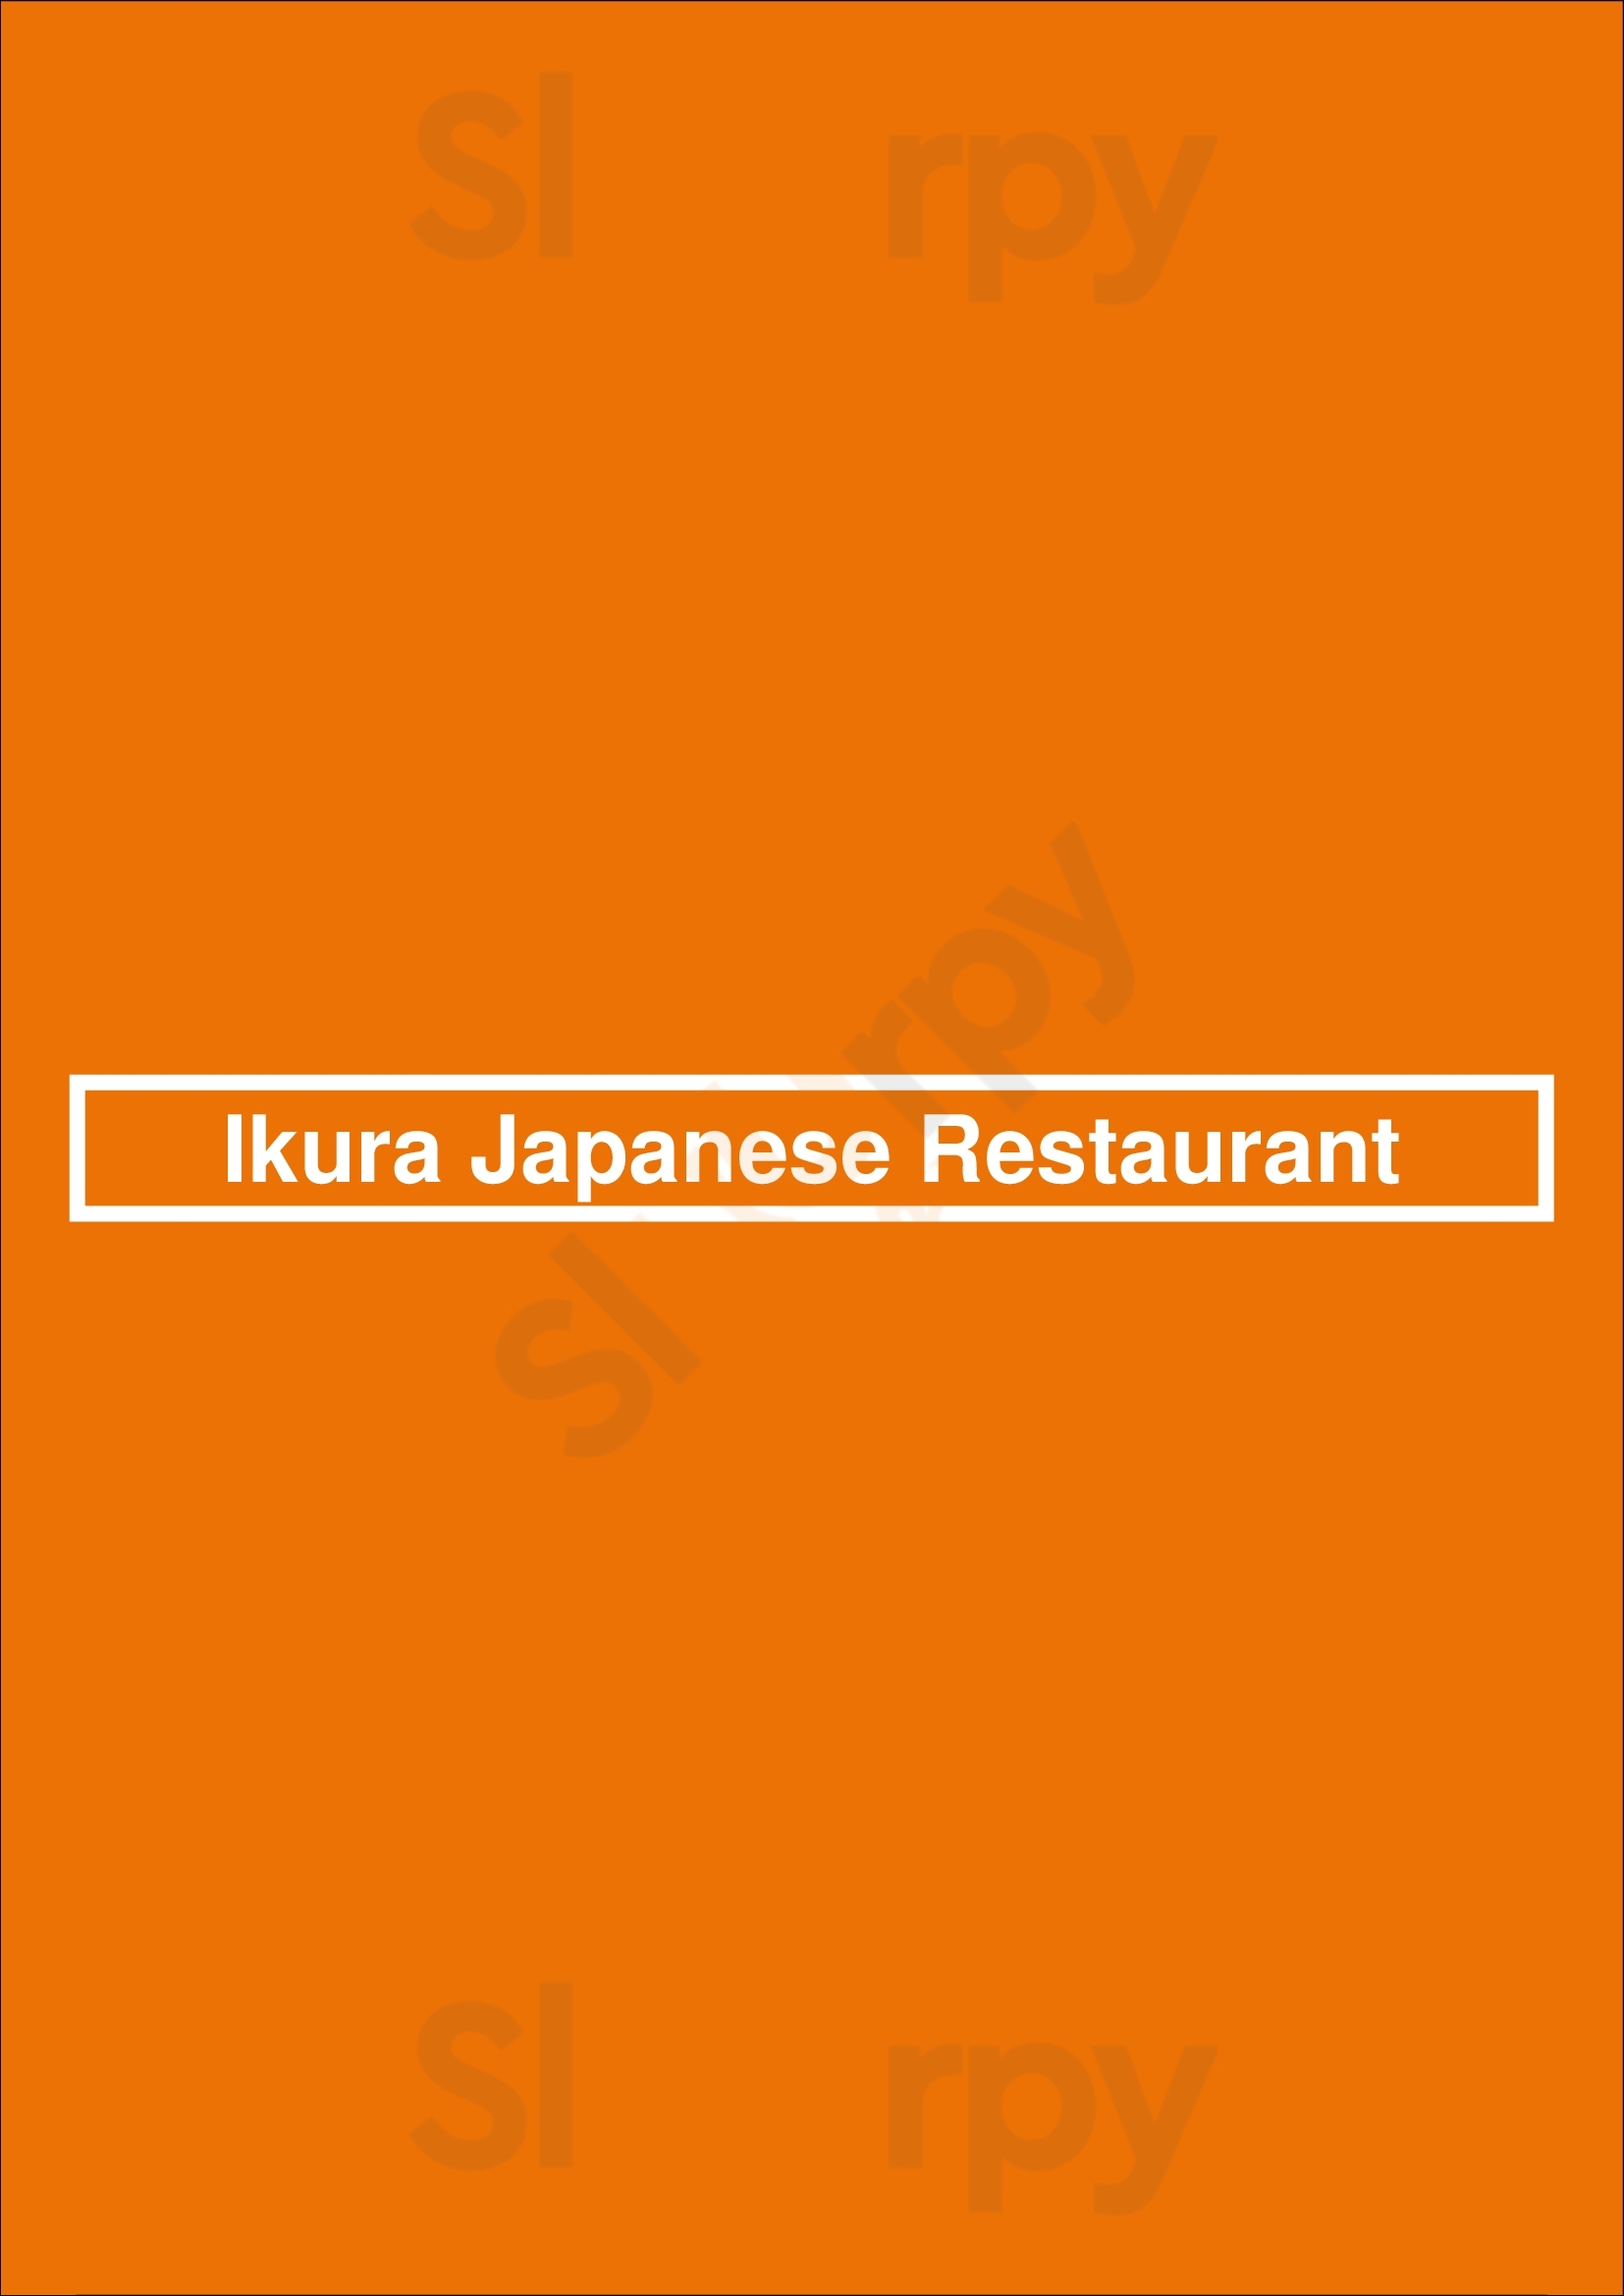 Ikura Japanese Restaurant Vancouver Menu - 1